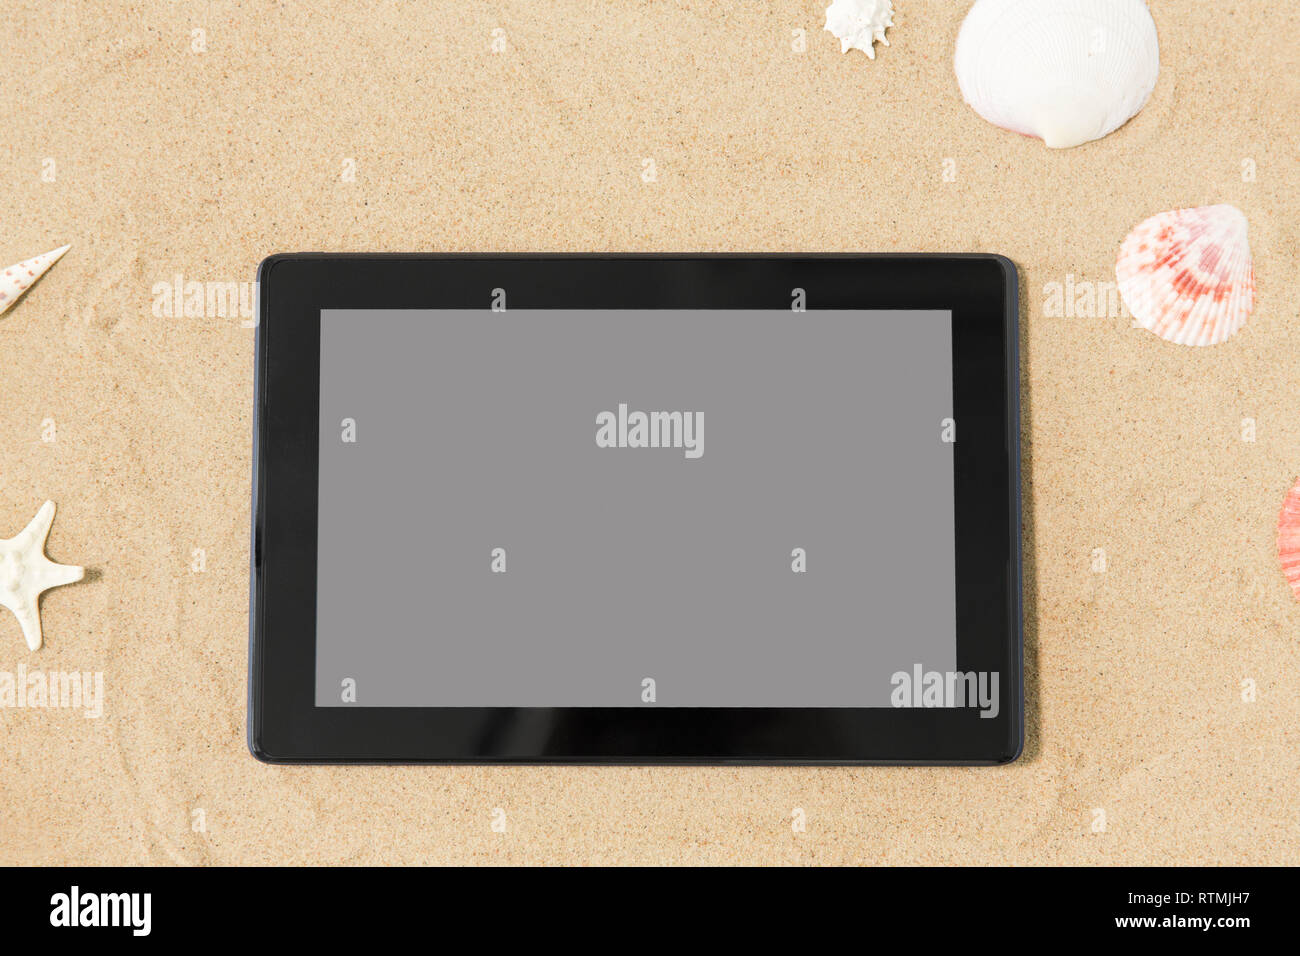 Tablet PC e conchiglie sulla spiaggia di sabbia Foto Stock